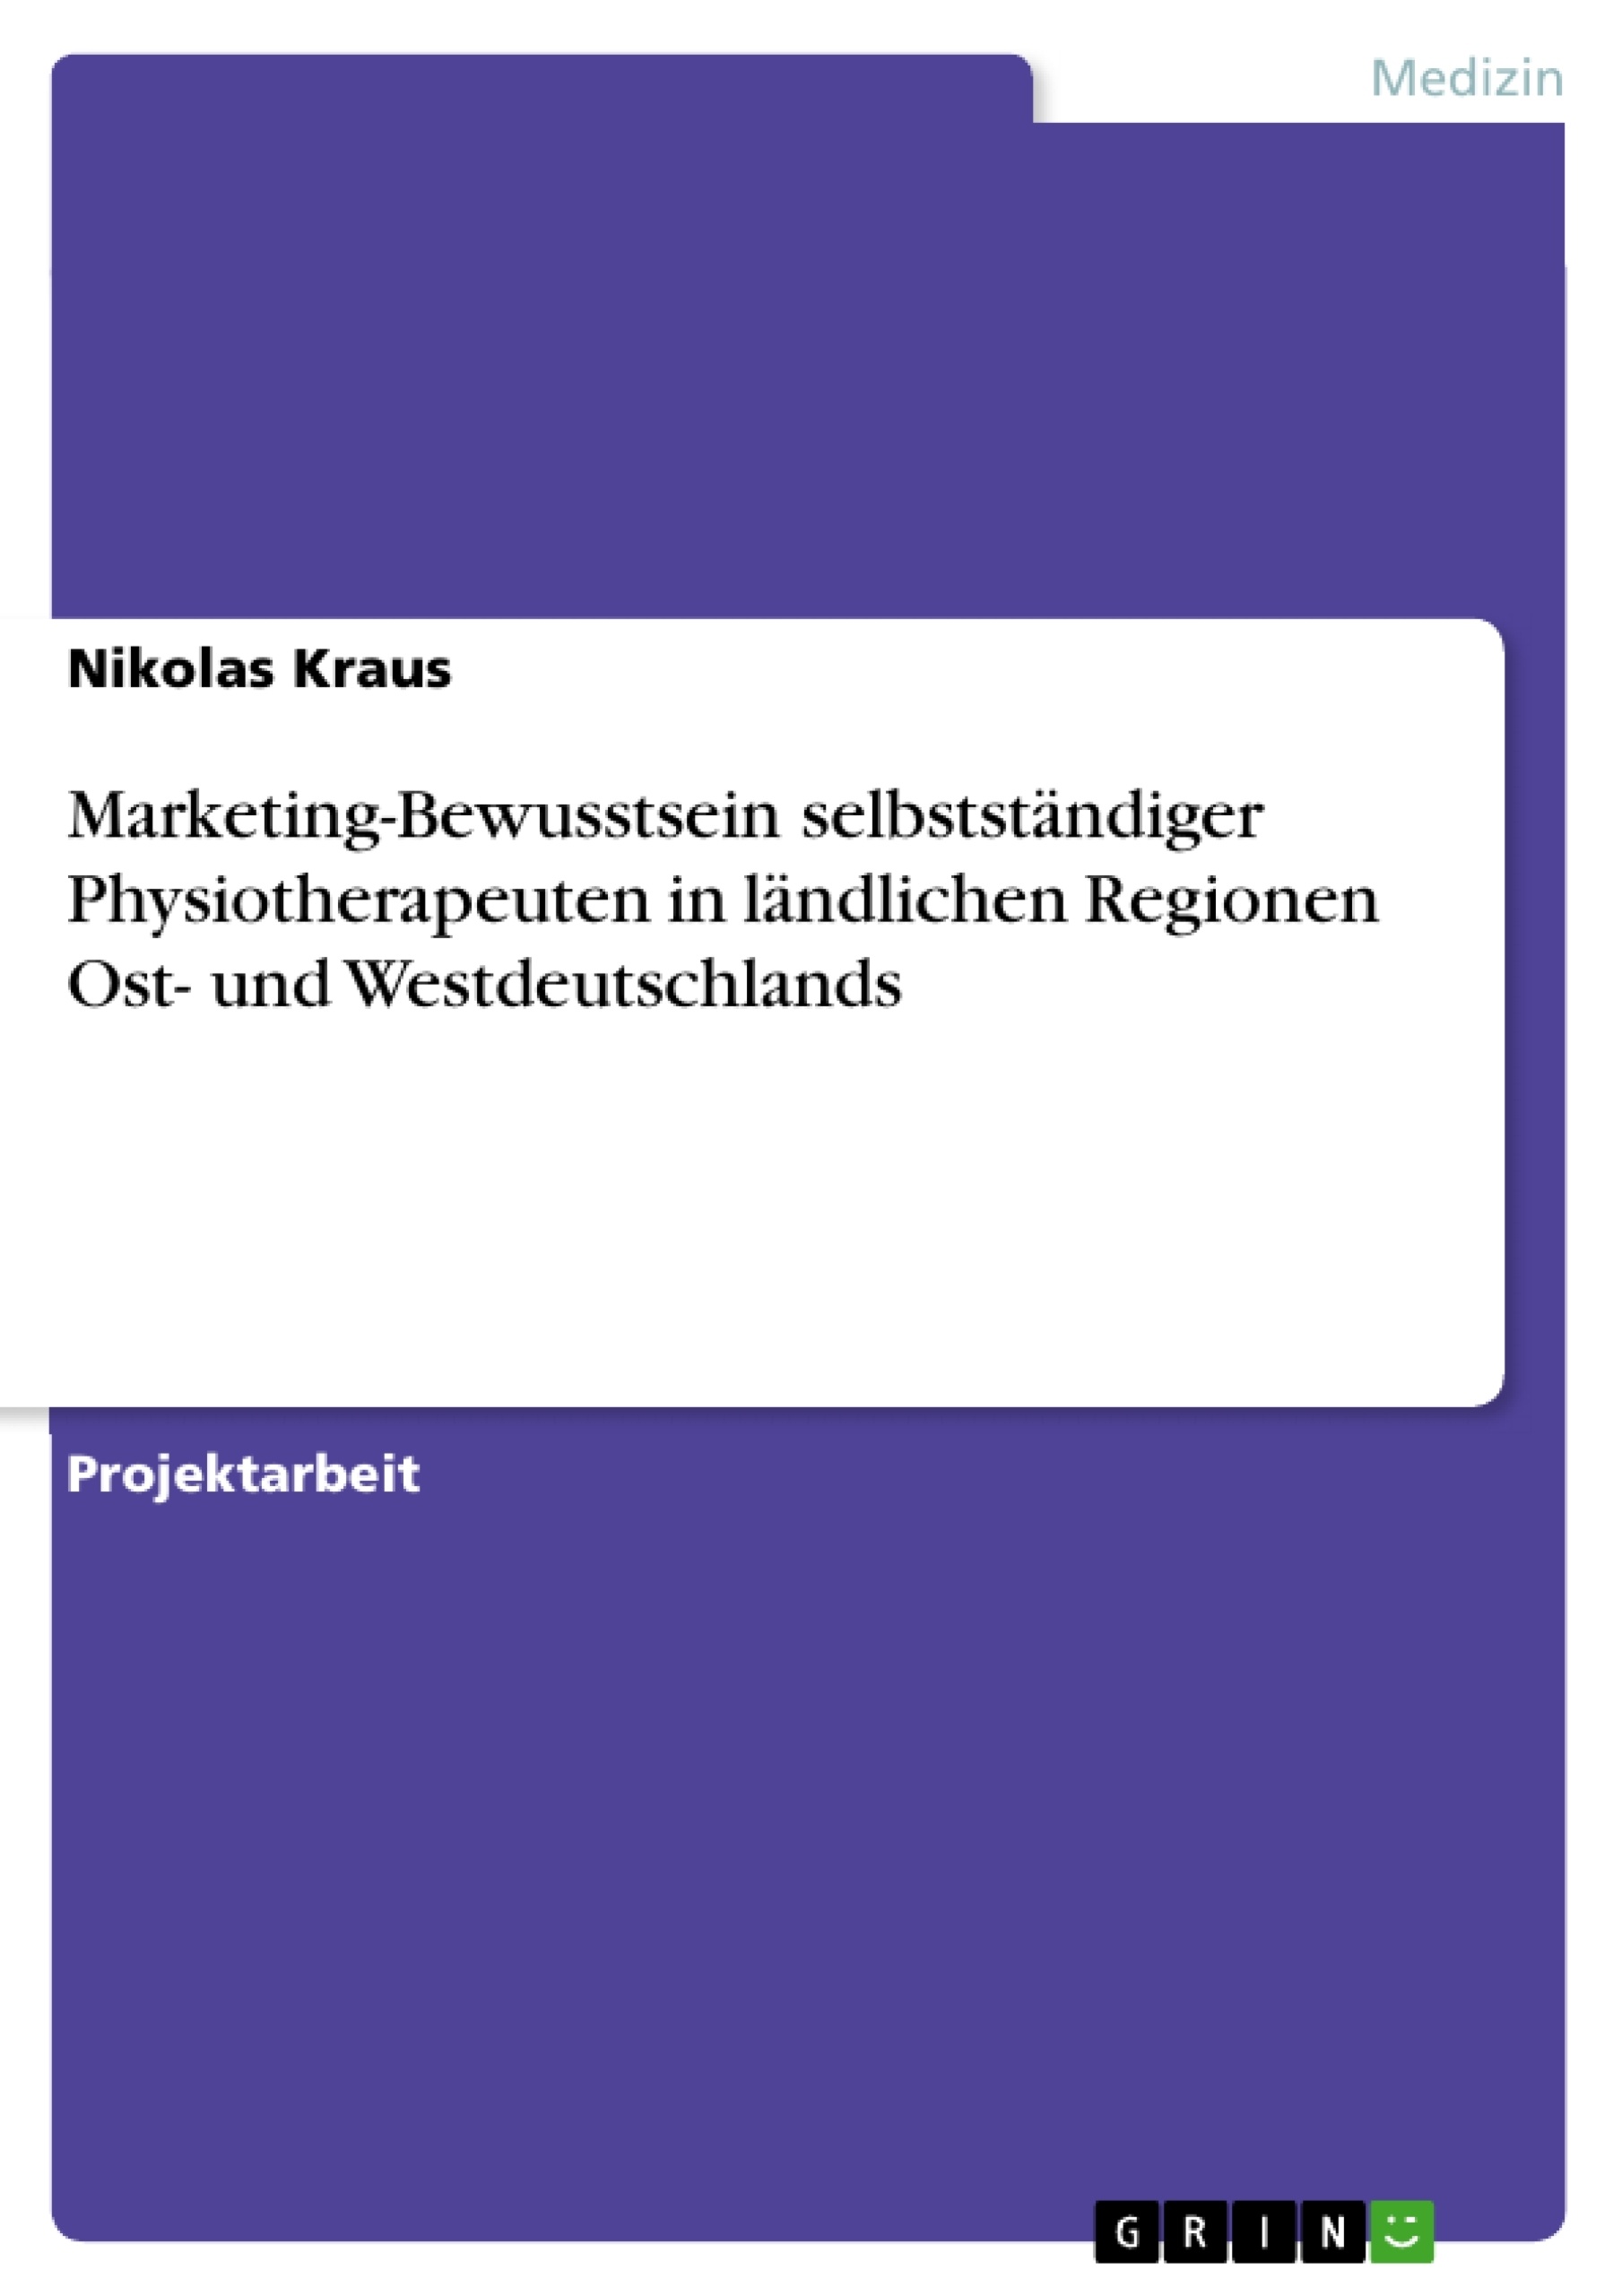 Title: Marketing-Bewusstsein selbstständiger Physiotherapeuten in ländlichen Regionen Ost- und Westdeutschlands